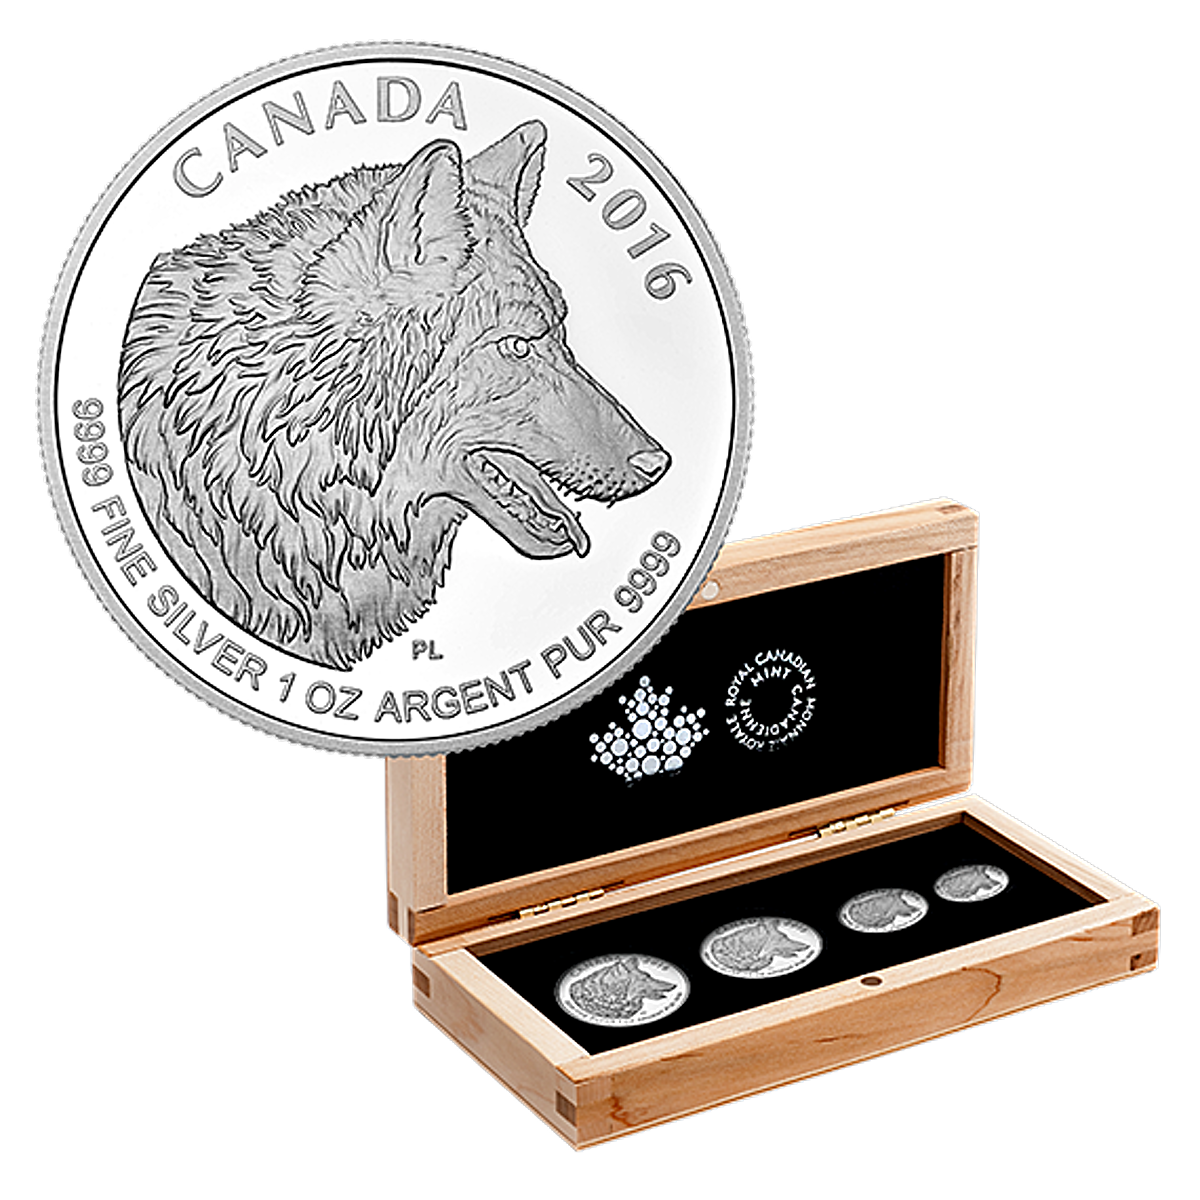 Bendog монета. Монета с волком. Инвестиционная монета волк. Серебряная монета собака. Волк с монетами в глазах.